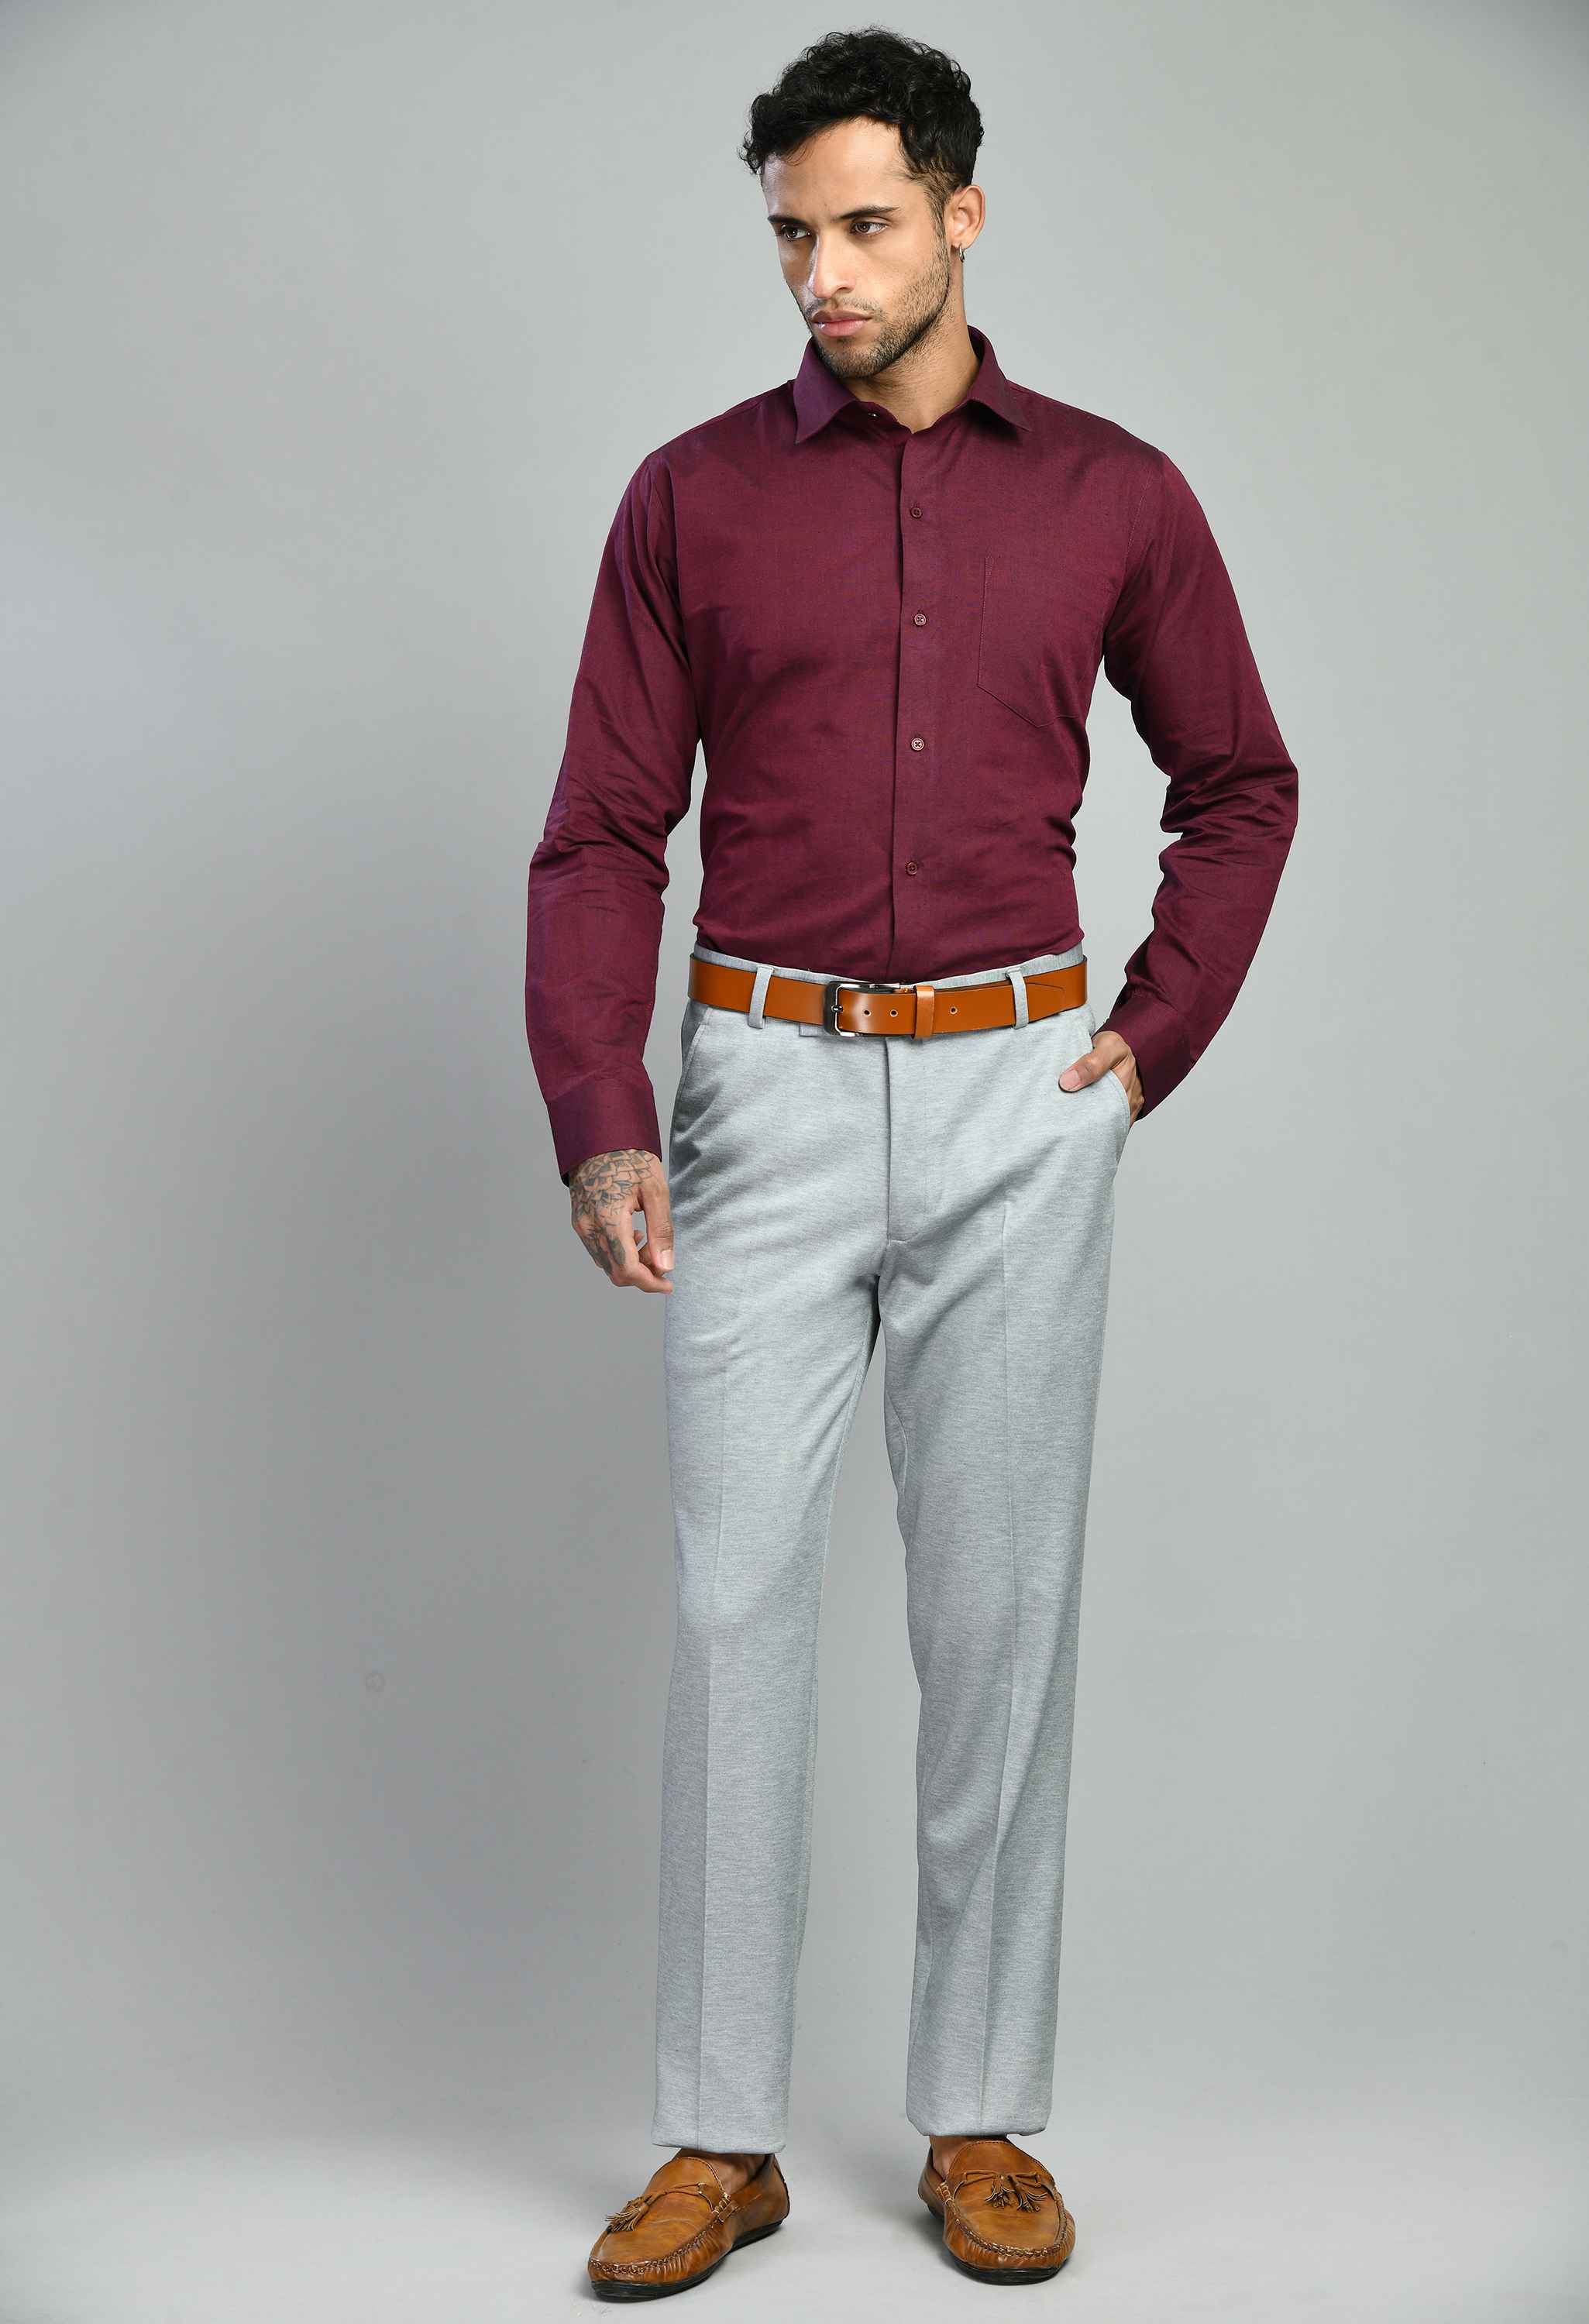 Men's Full Sleeves Slim Fit Formal Shirt